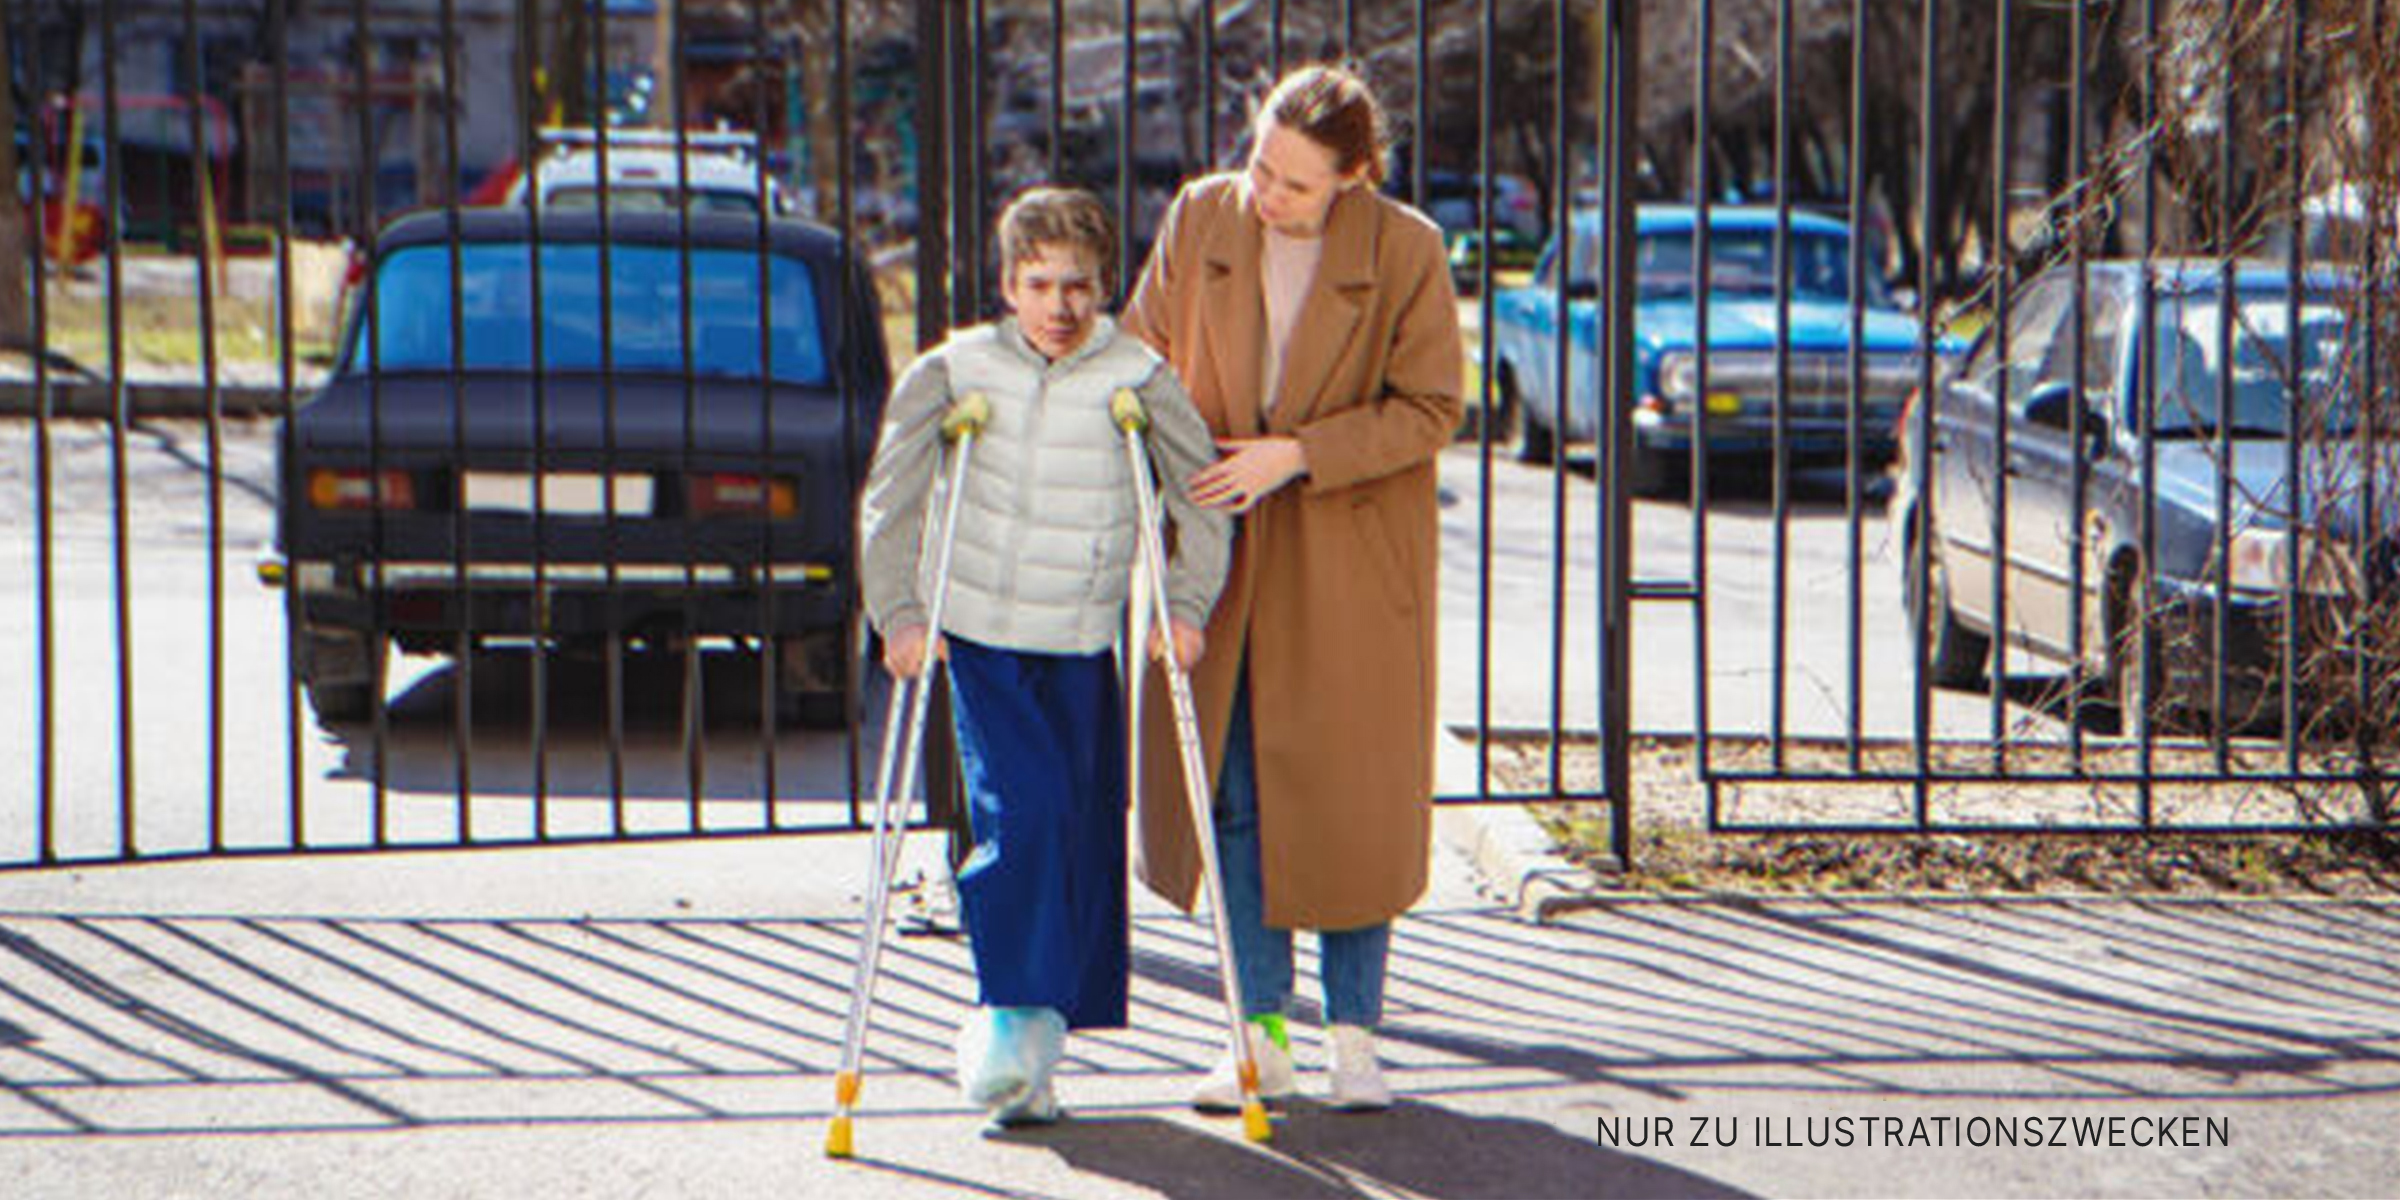 Frau hilft Jungen auf Krücken. | Quelle: Getty Images